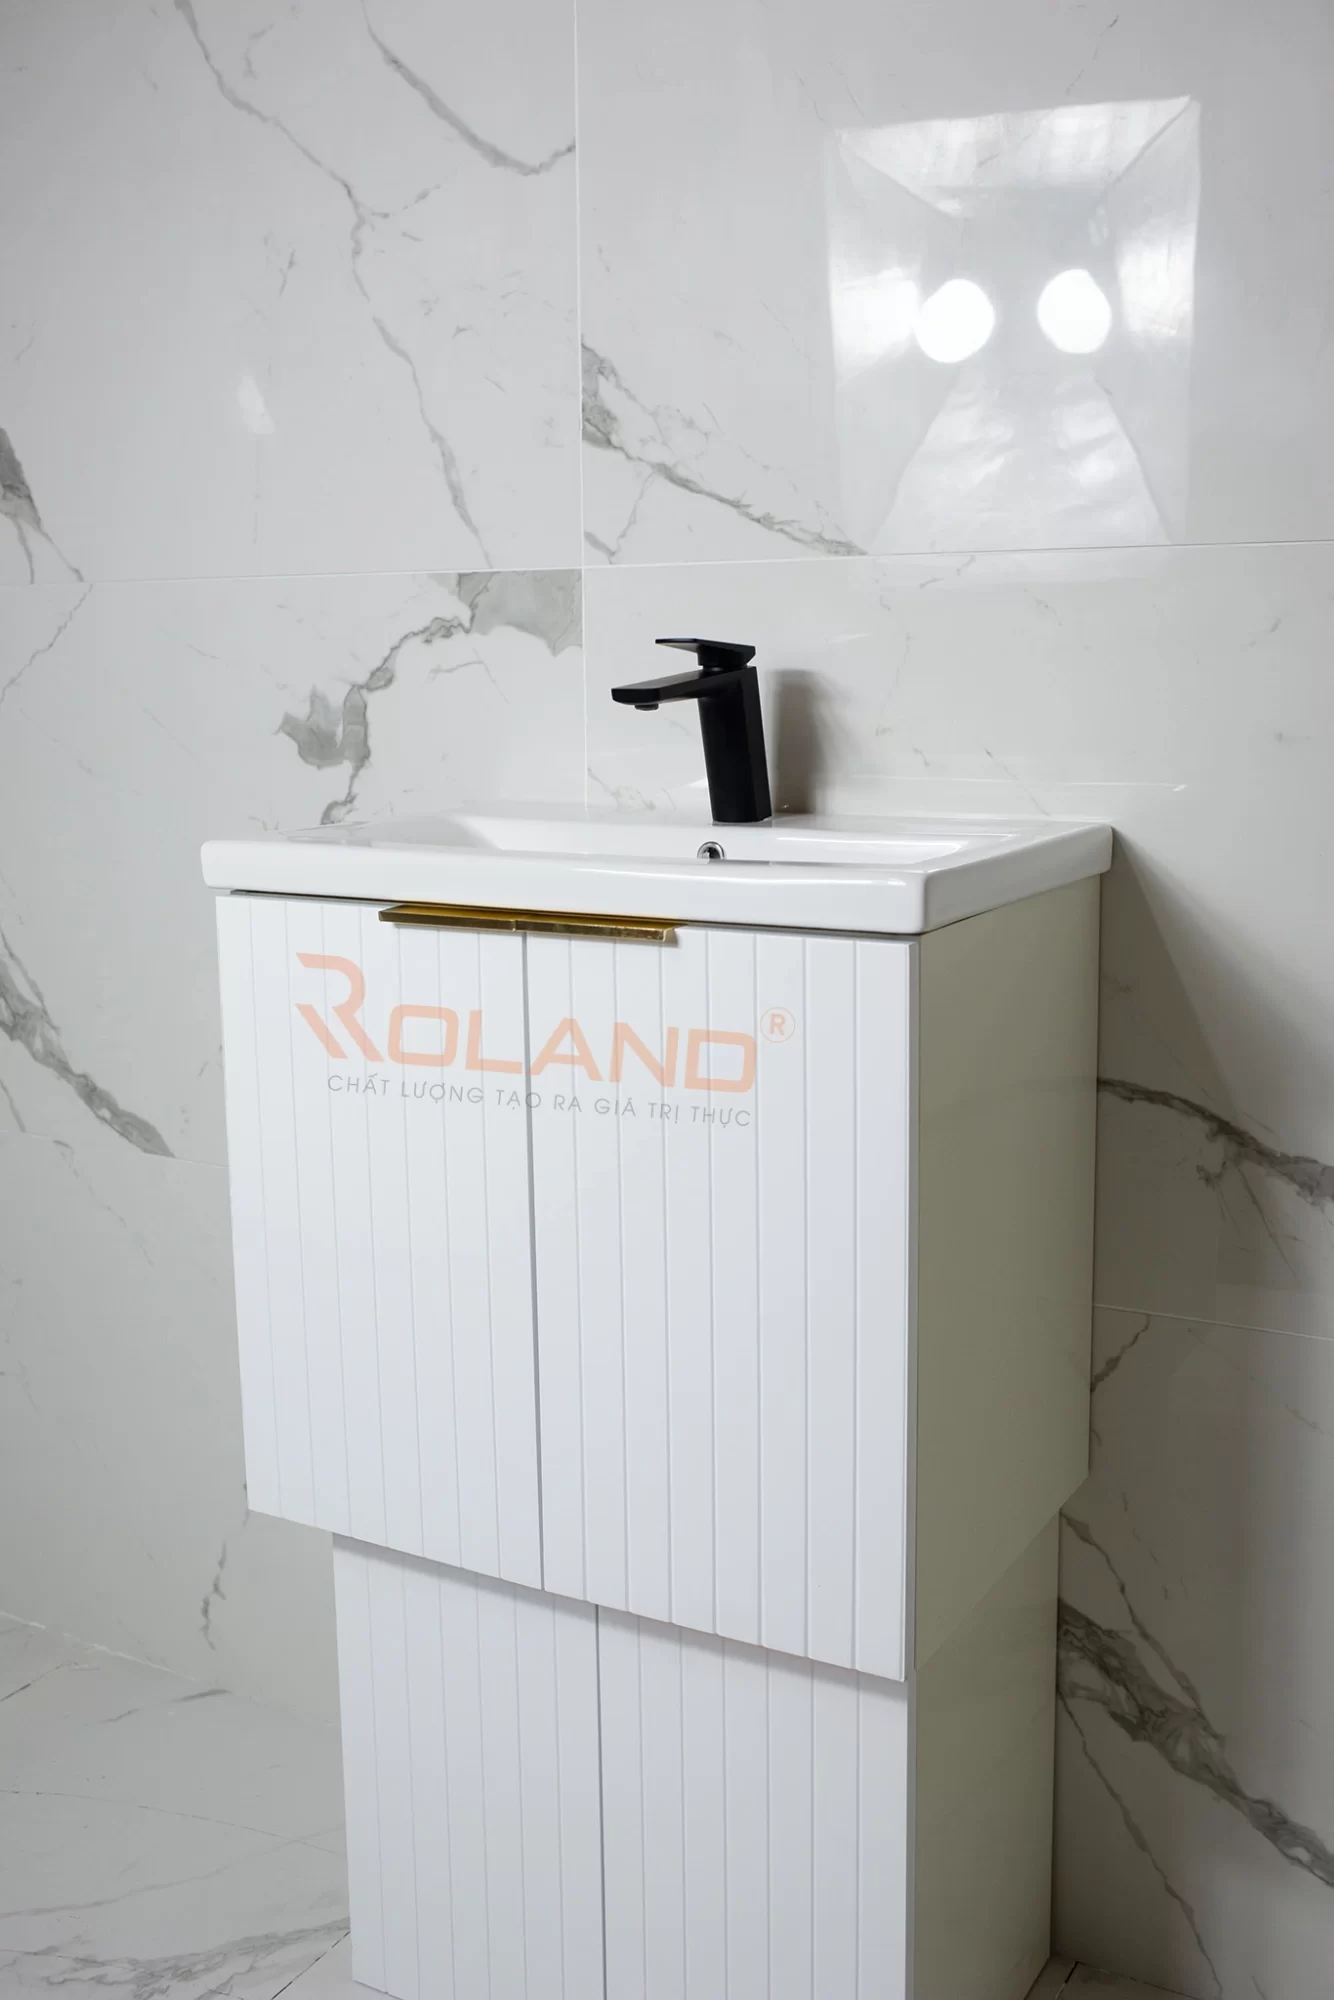 Tủ Lavabo Roland LB 10 (trắng / xám)